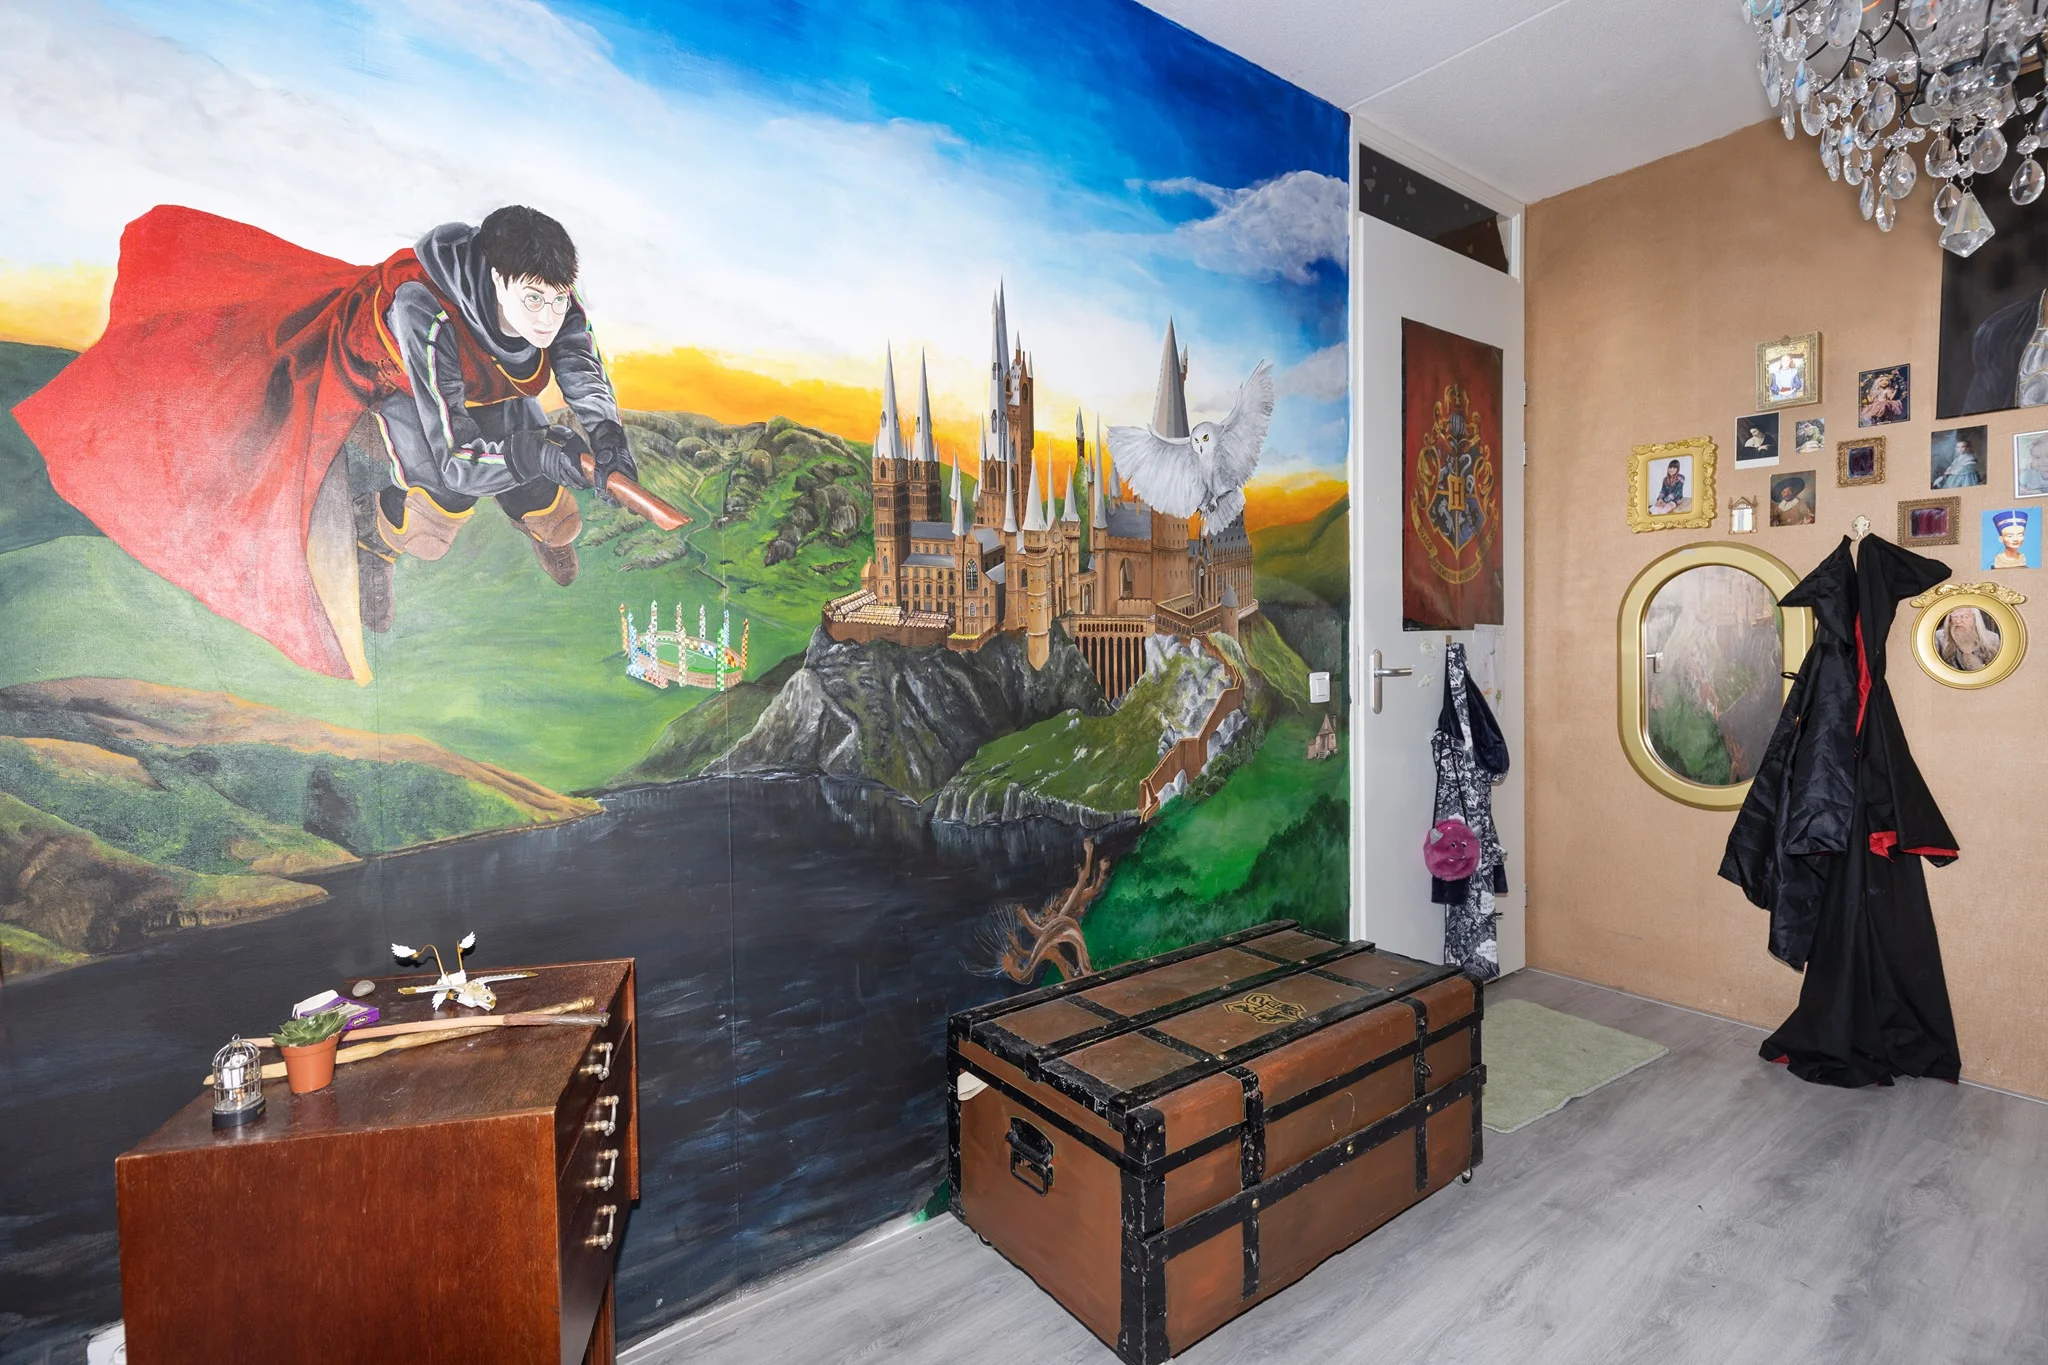 Мама создала для дочери комнату в стилистике Гарри Поттера, и теперь ей все завидуют - фото 452704